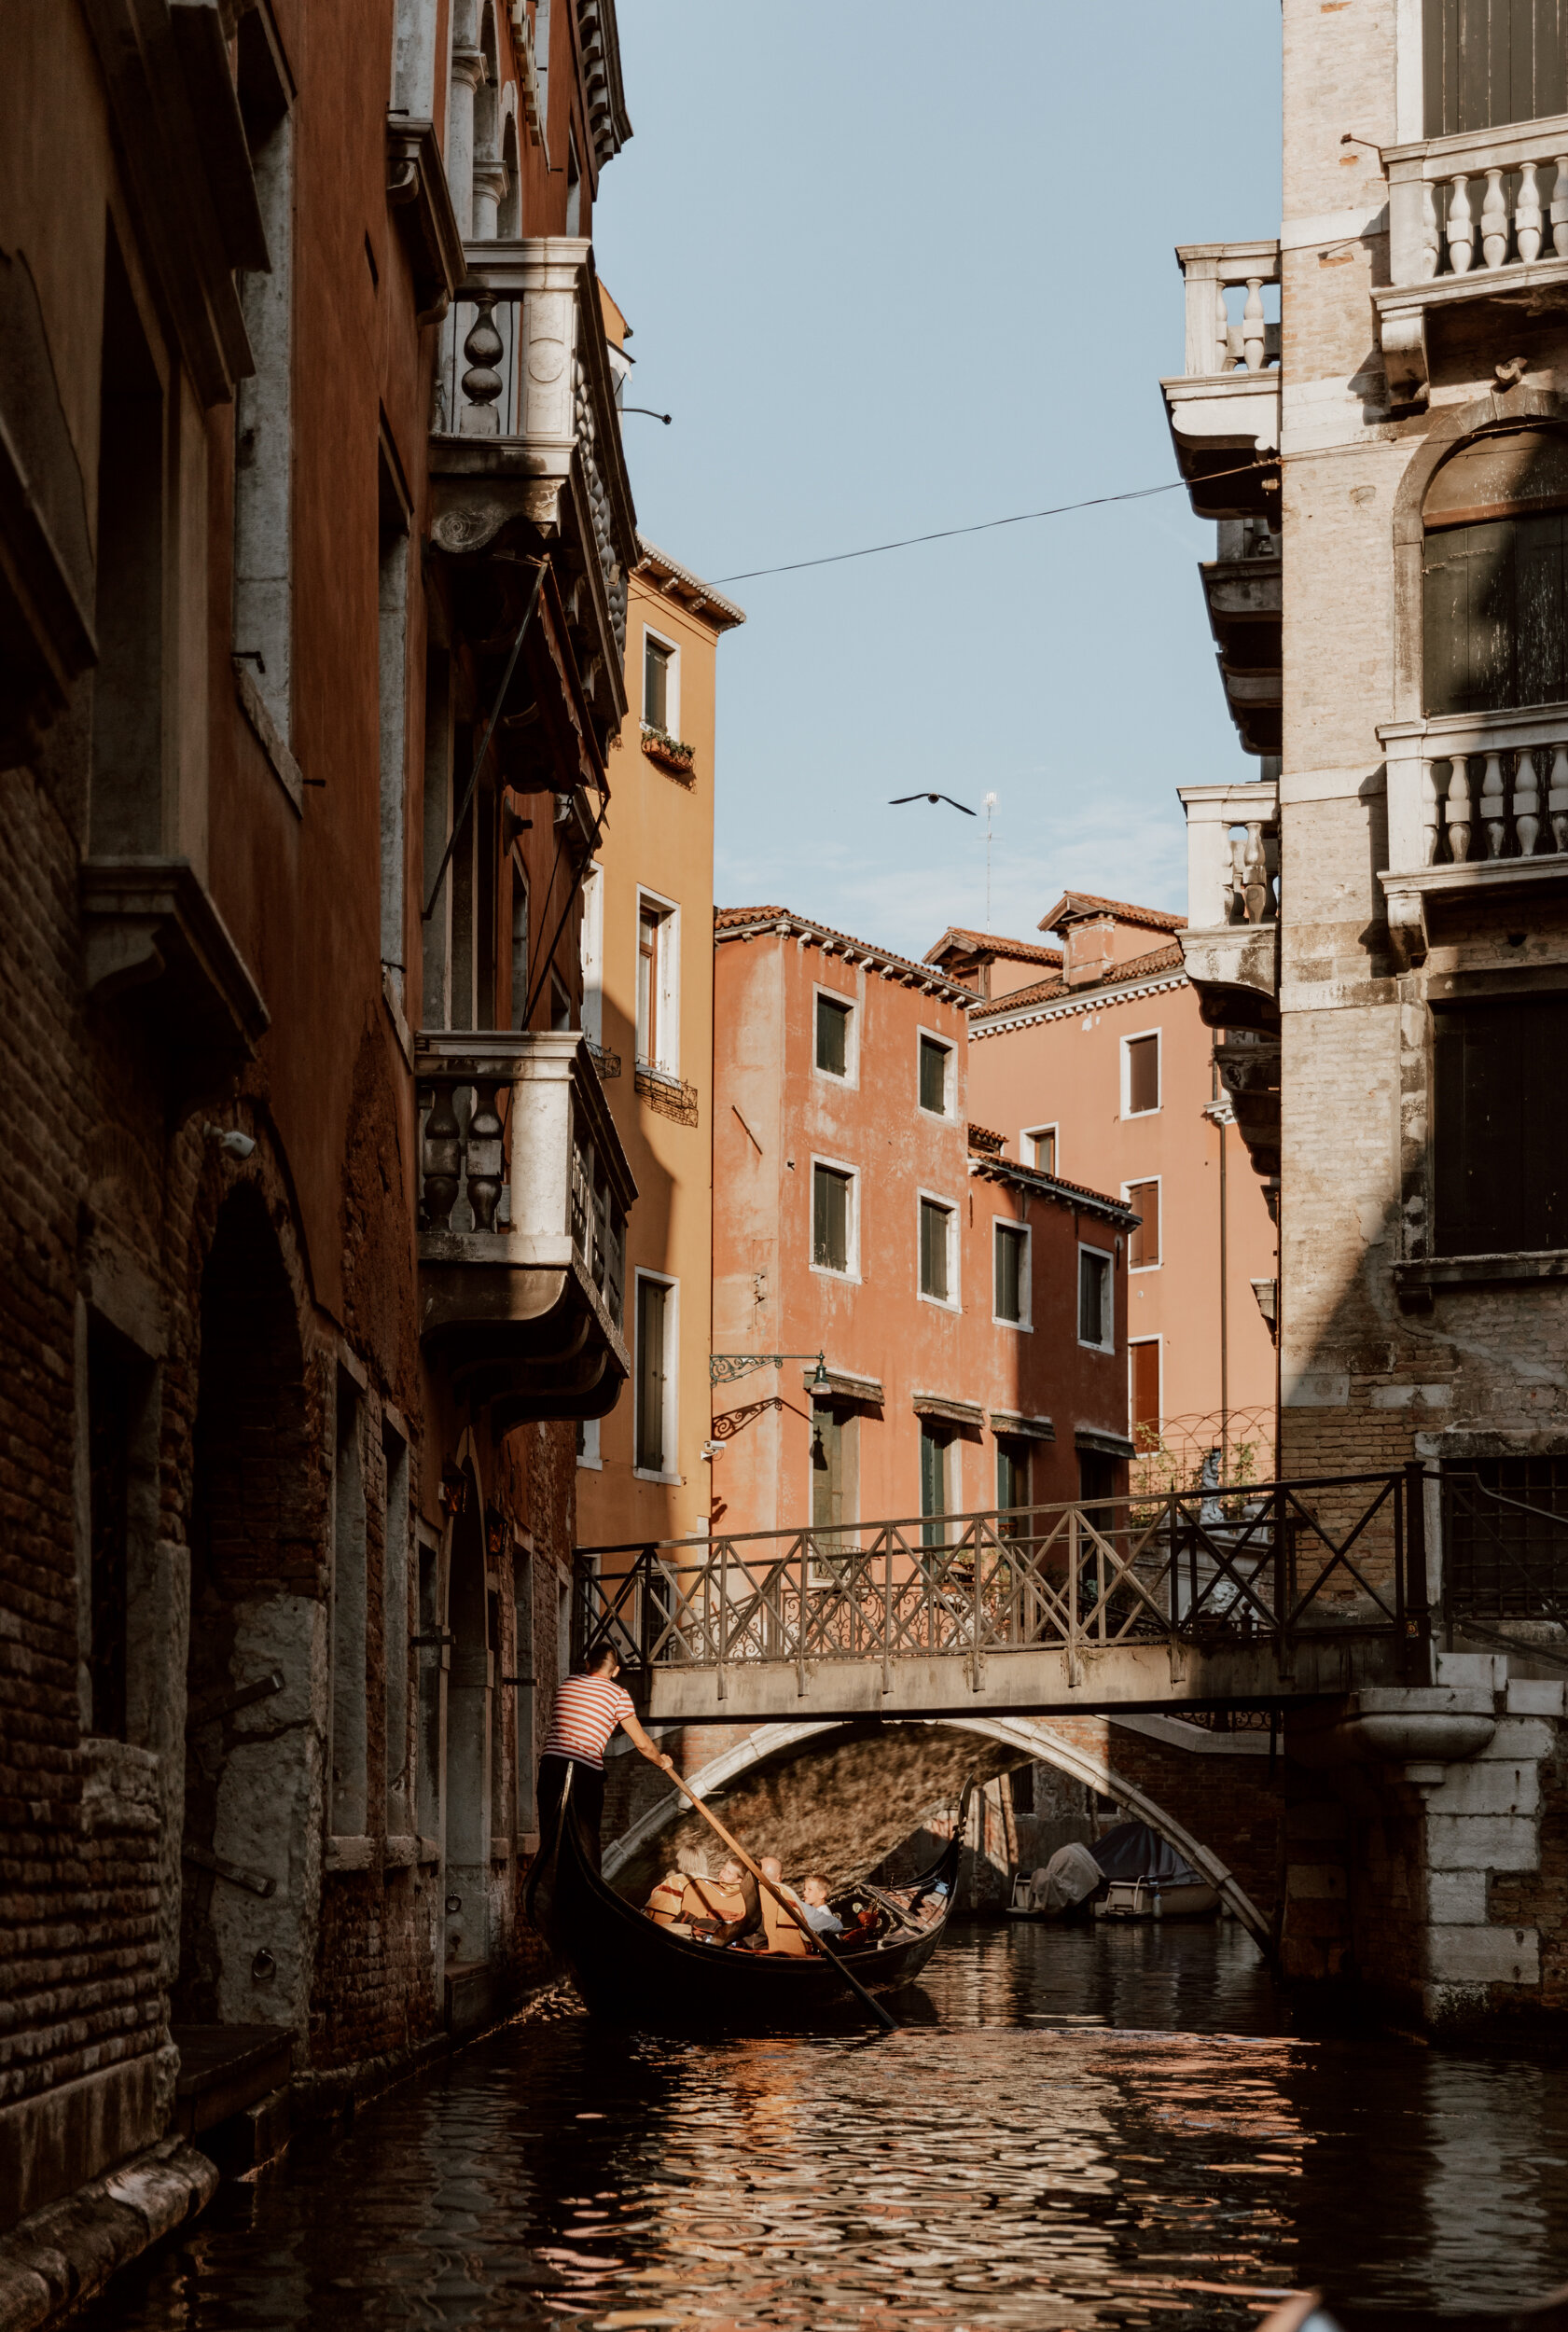 Venetian gondola ride